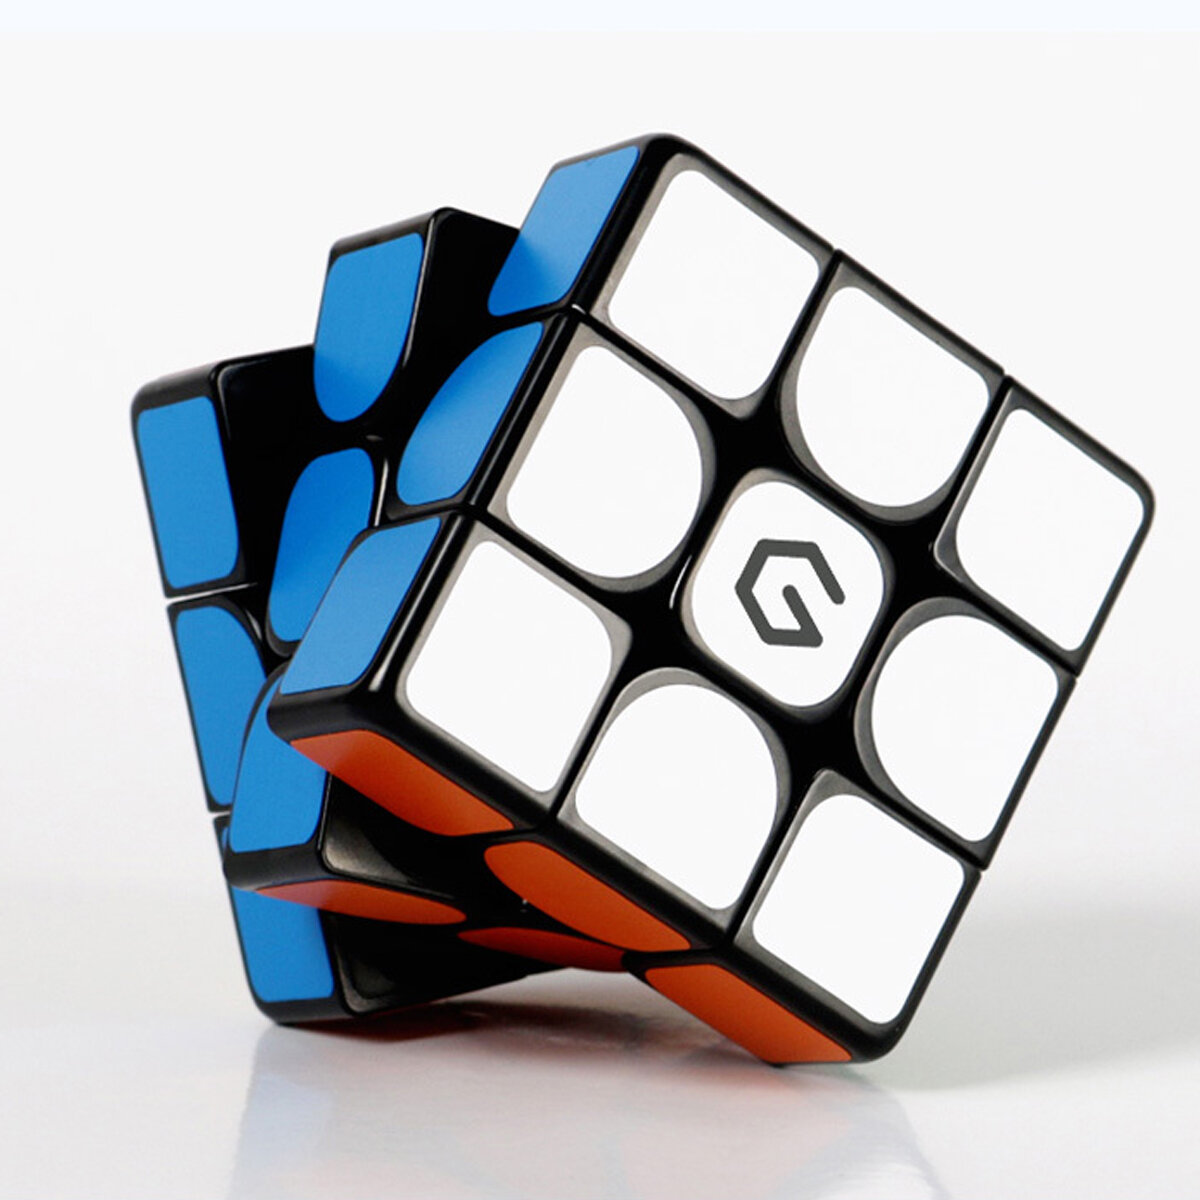 

Giiker M3 Магнитный Cube 3x3x3 Яркий цветной квадрат Волшебный Cube Головоломка Наука Образование Игрушка в подарок